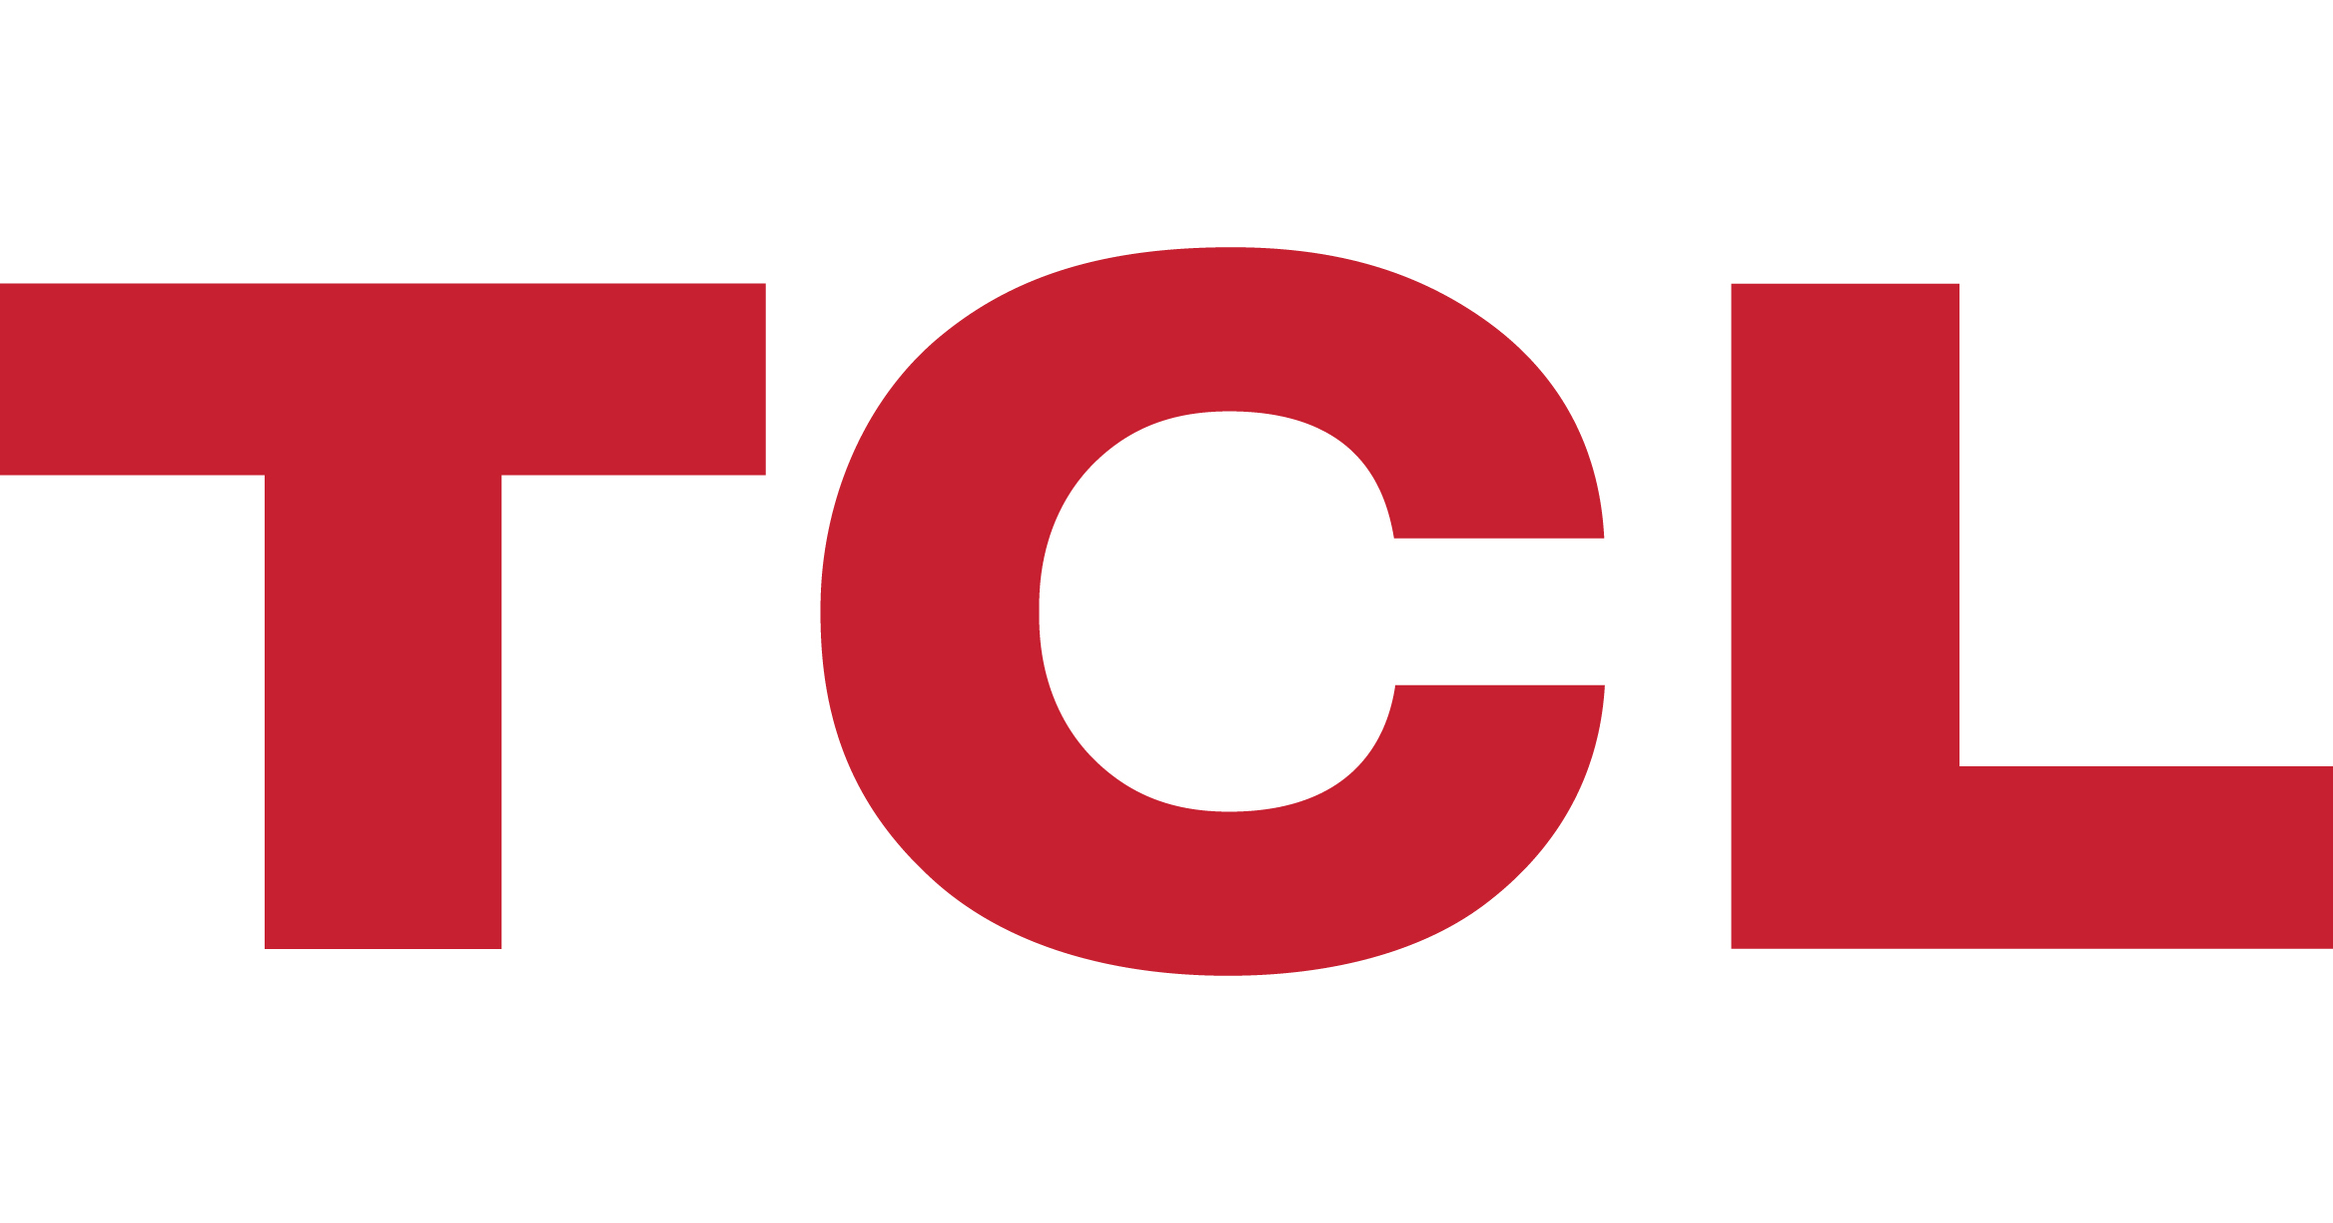 TCL Technology - Wikipedia